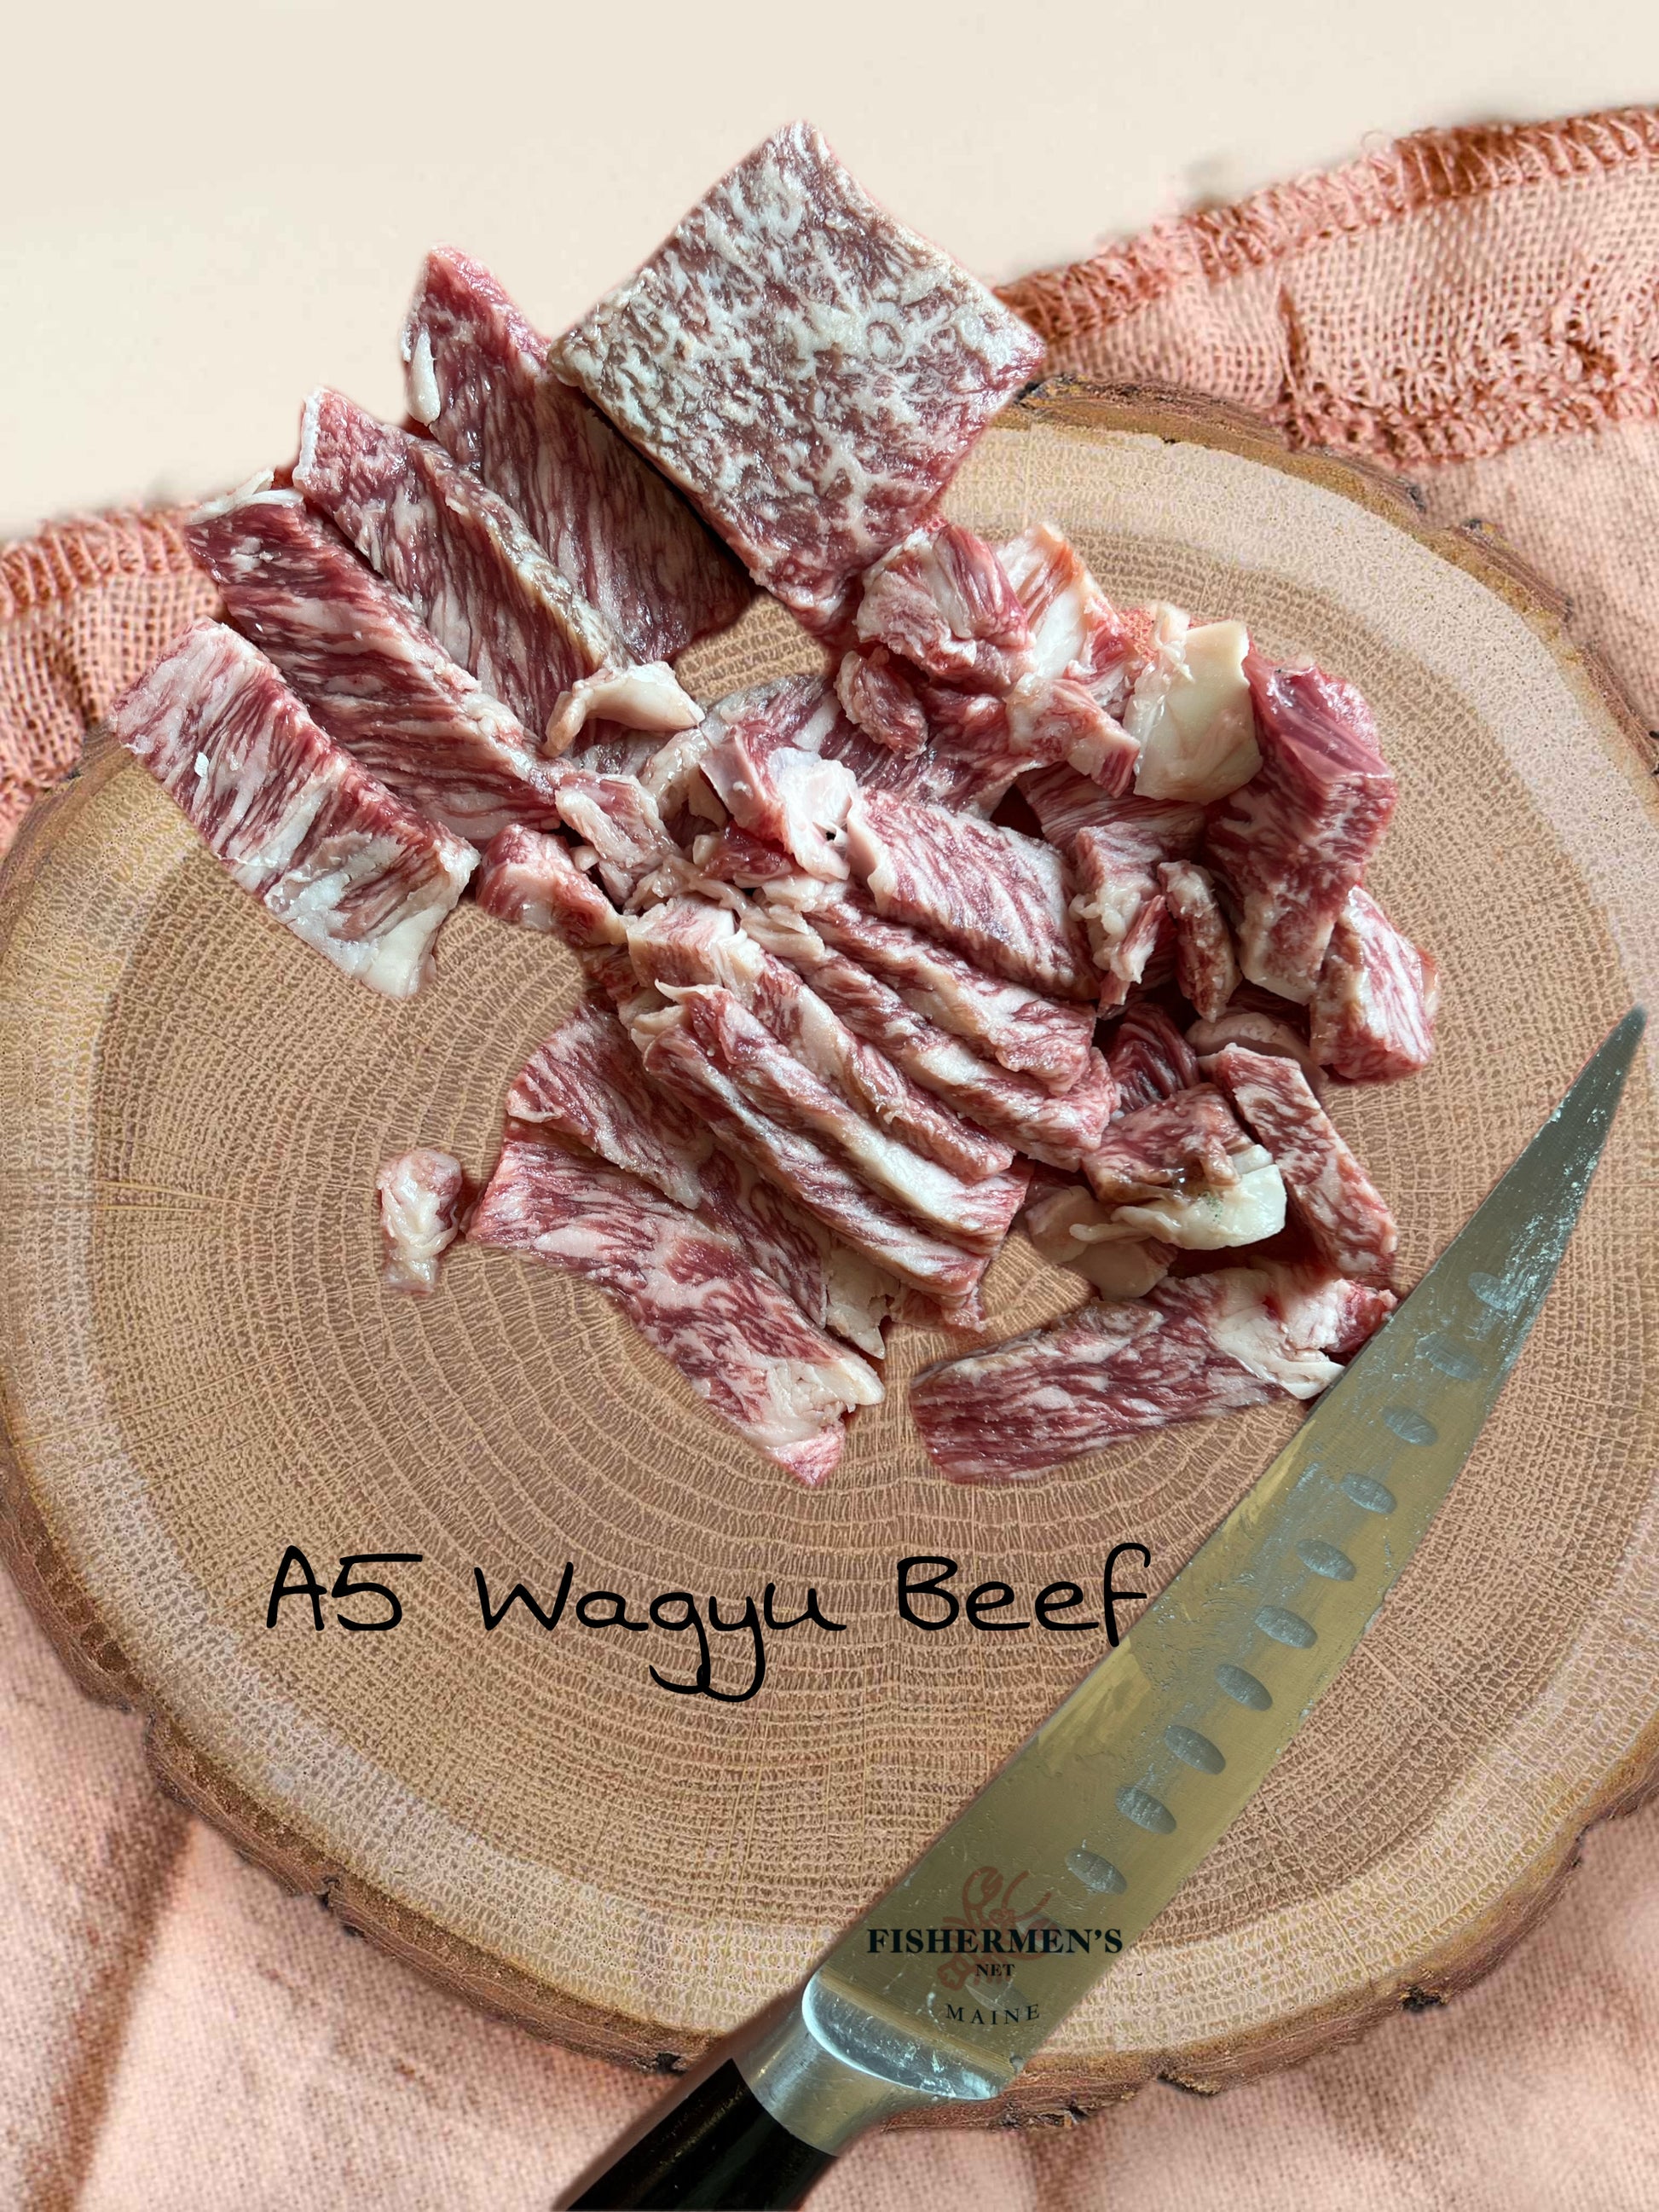 Japanese A5 Wagyu Beef - Miyazaki Beef - Strip Loin